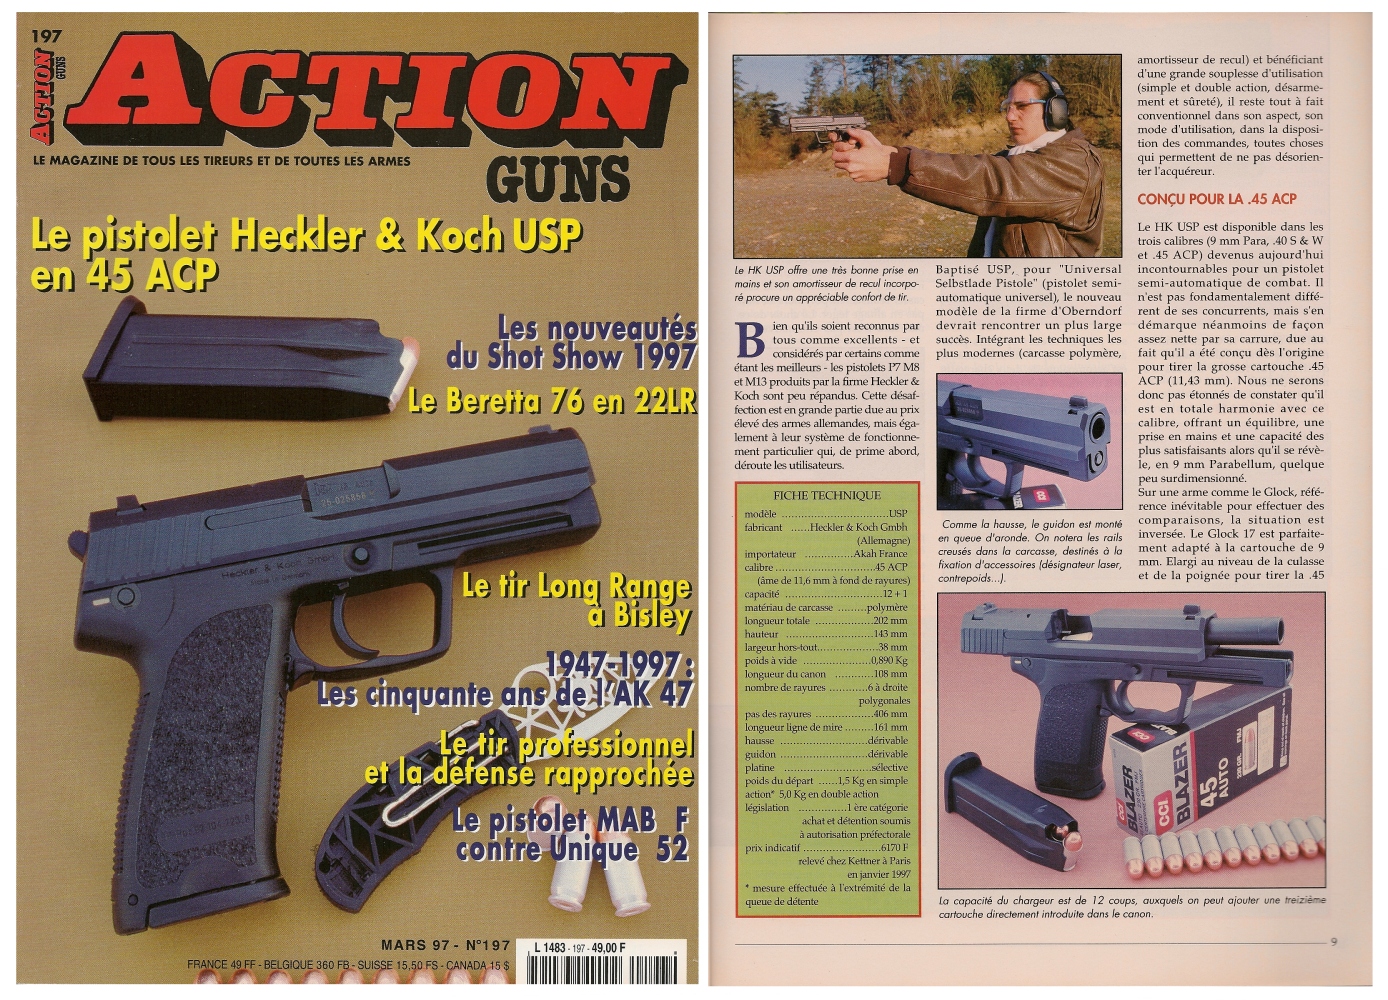 Le banc d'essai du pistolet HK modèle USP a été publié sur 7 pages dans le magazine Action Guns n° 197 (mars 1997).